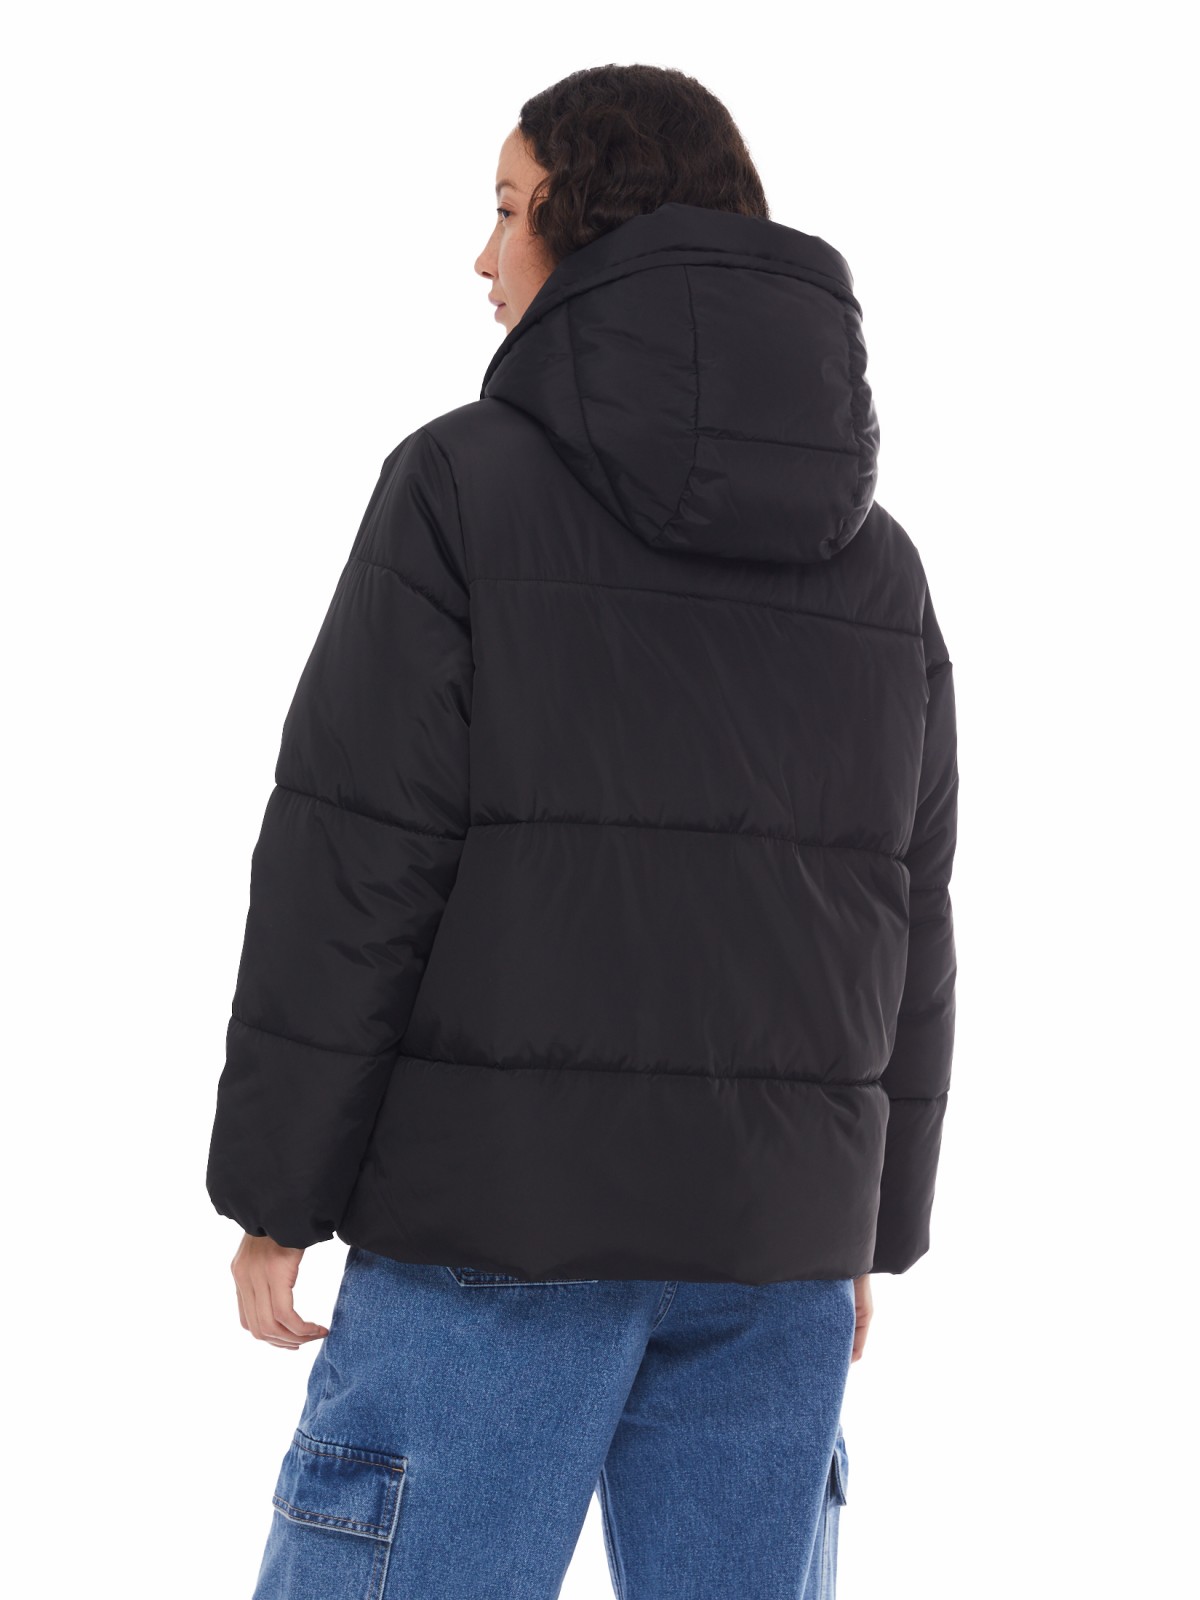 Тёплая укороченная дутая куртка с капюшоном zolla 024125112434, цвет черный, размер XS - фото 6